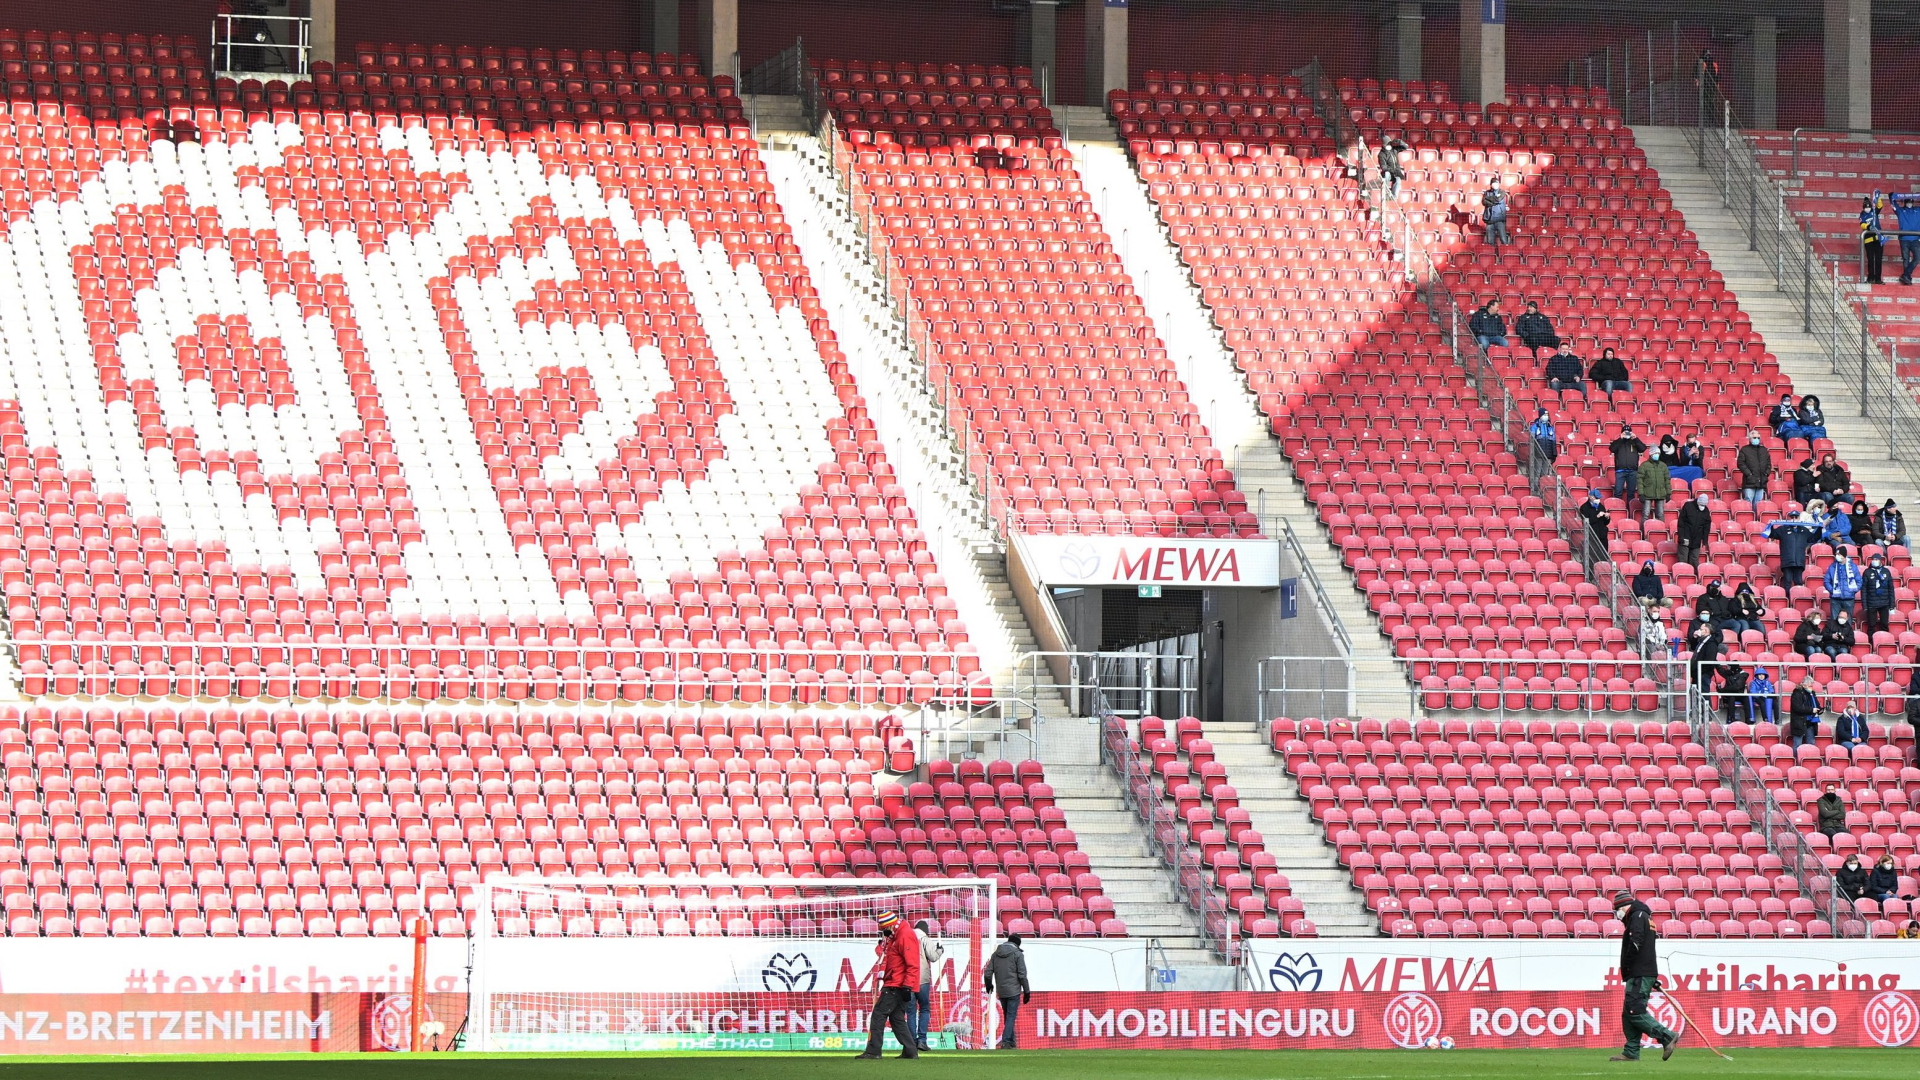 Leere Ränge im Stadion des Bundesligisten Mainz 05. | dpa